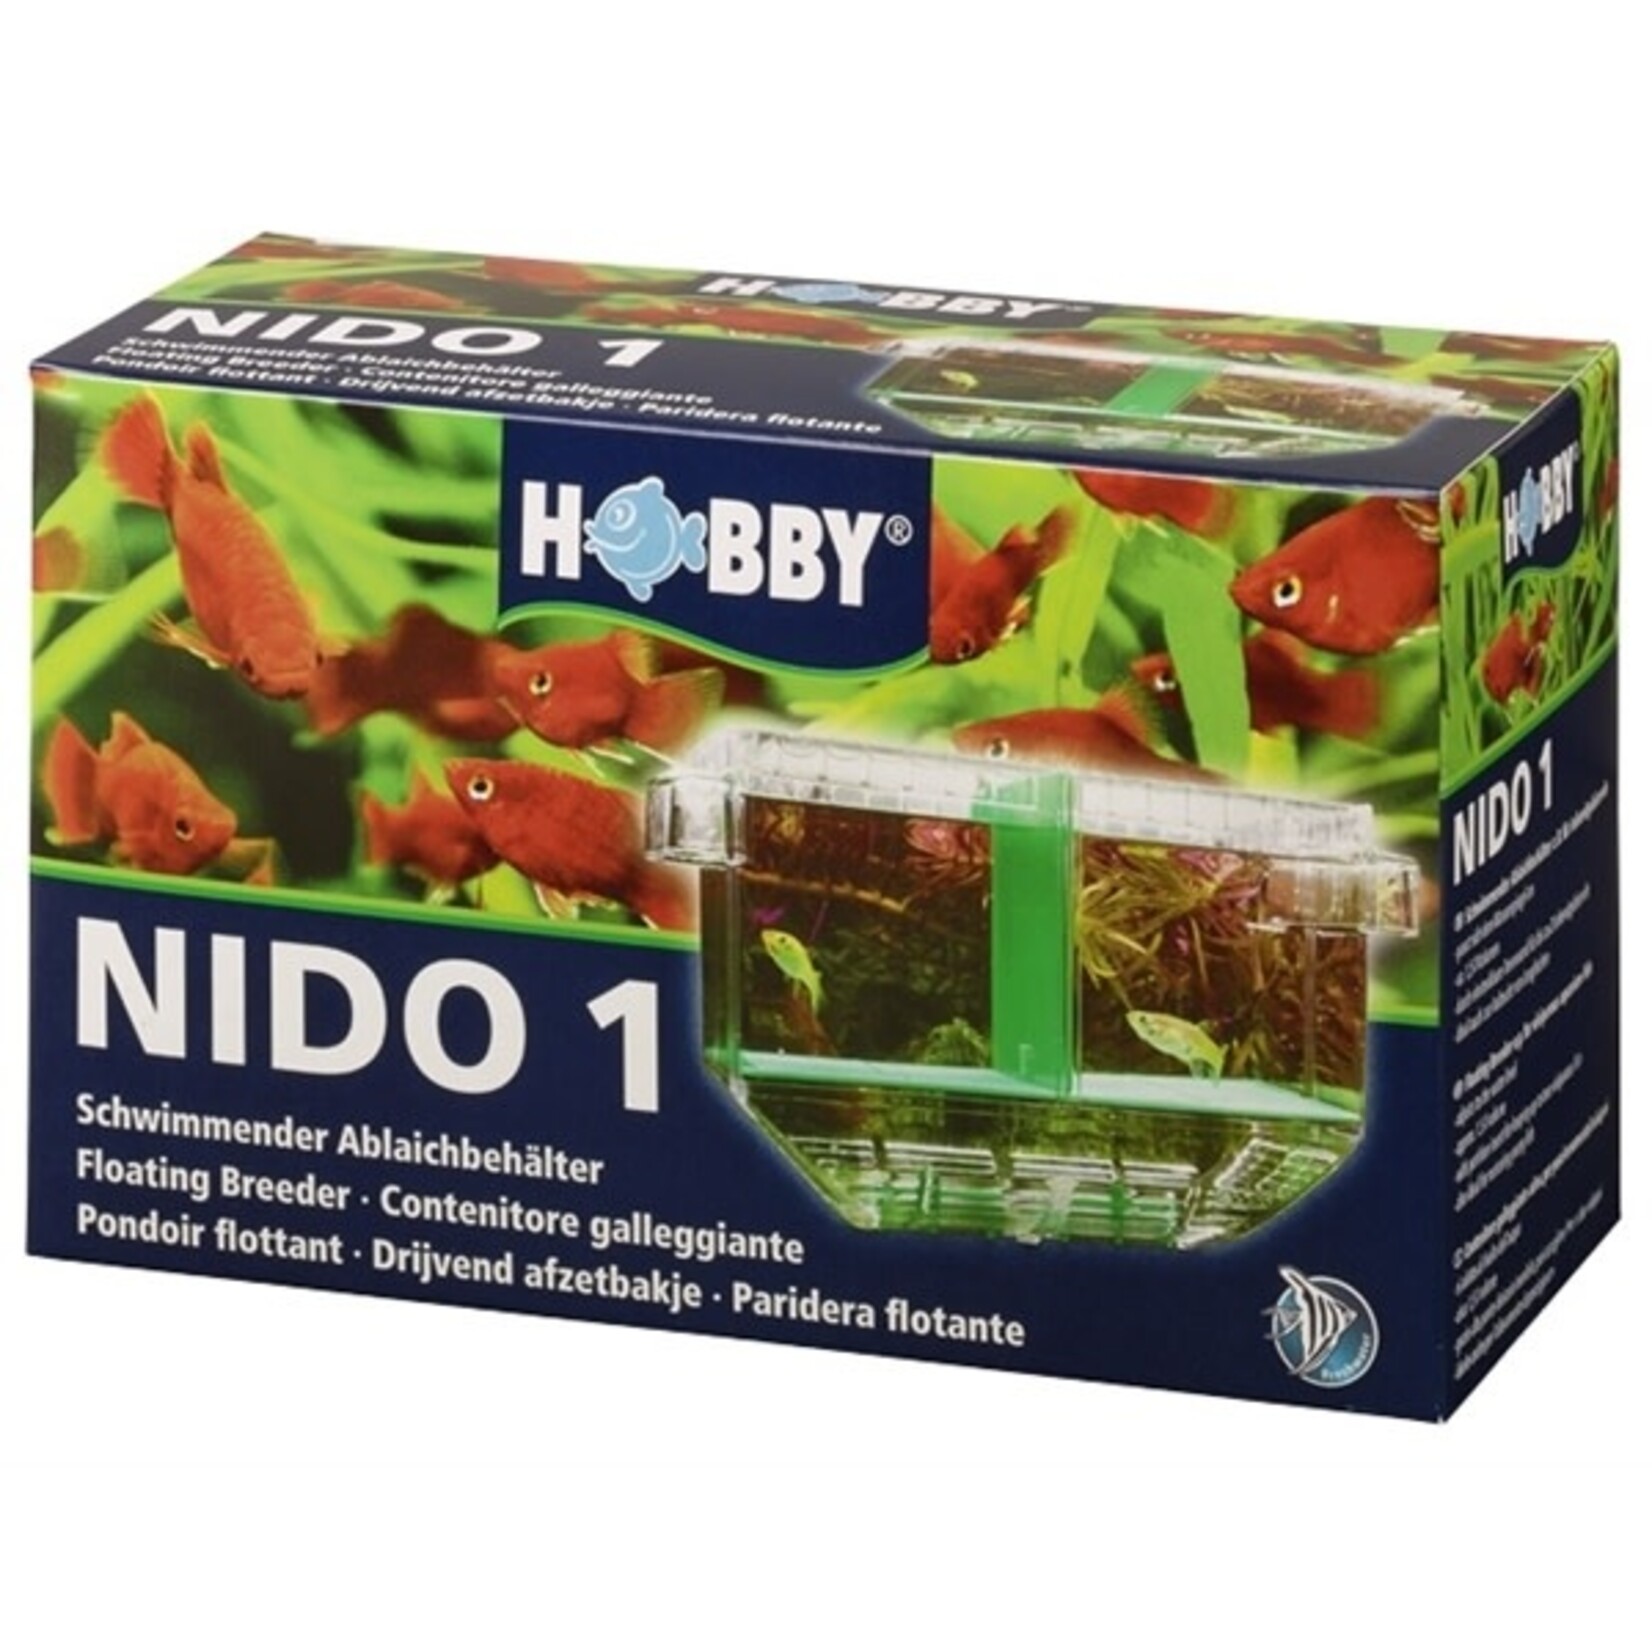 Hobby Nido 1 storage tray 19.5x11x19 cm